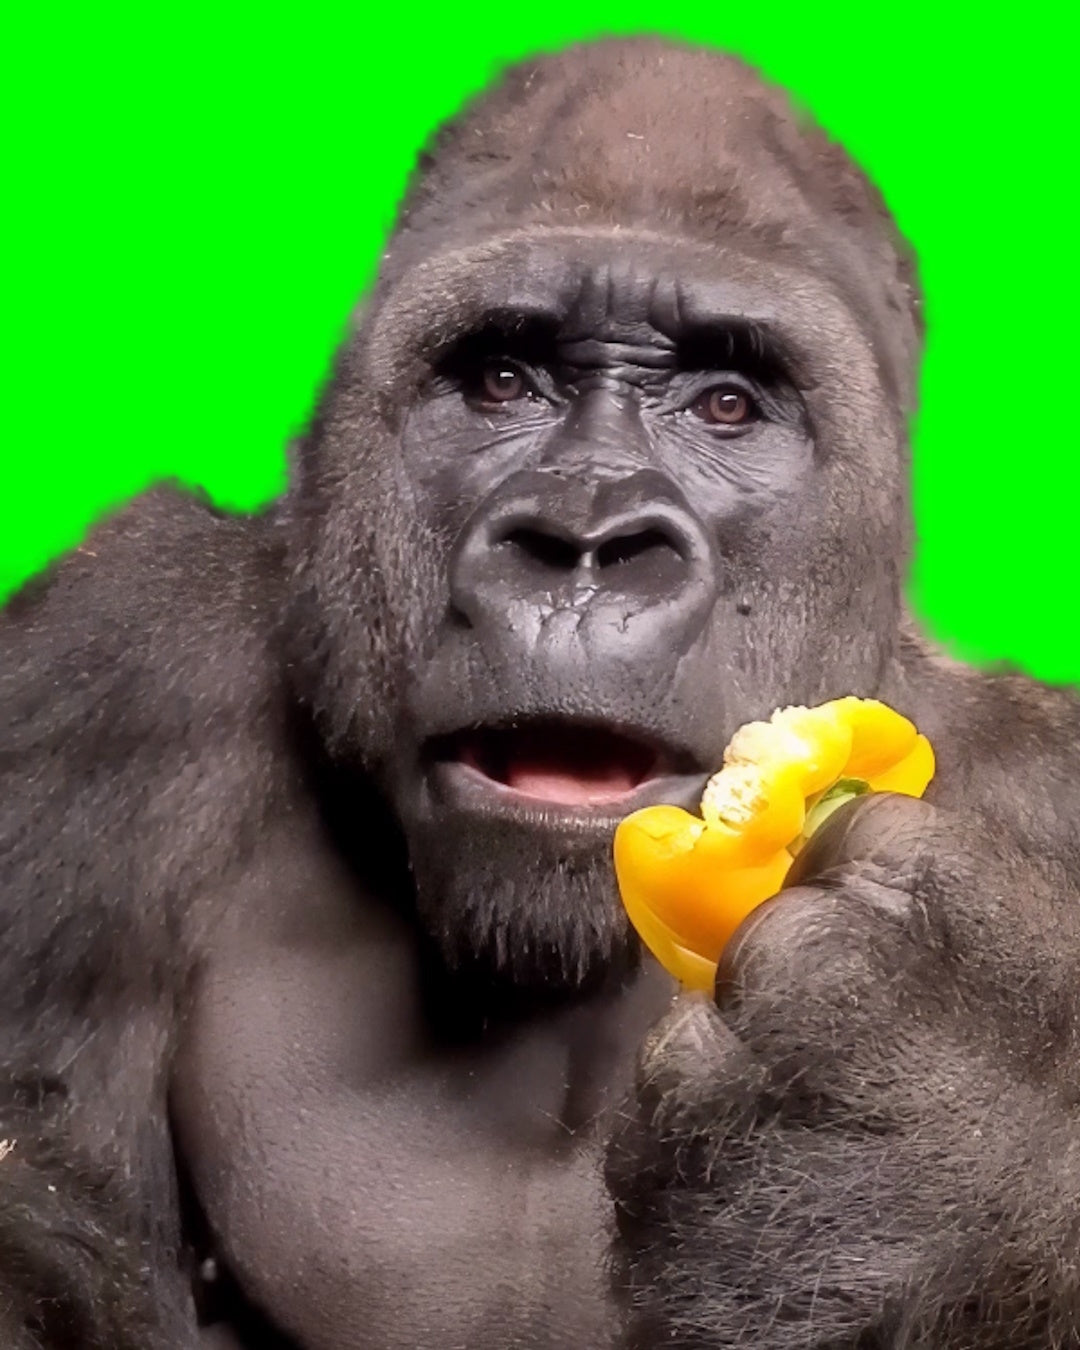 Gorilla eating bell pepper shocked face reaction meme (Green Screen)